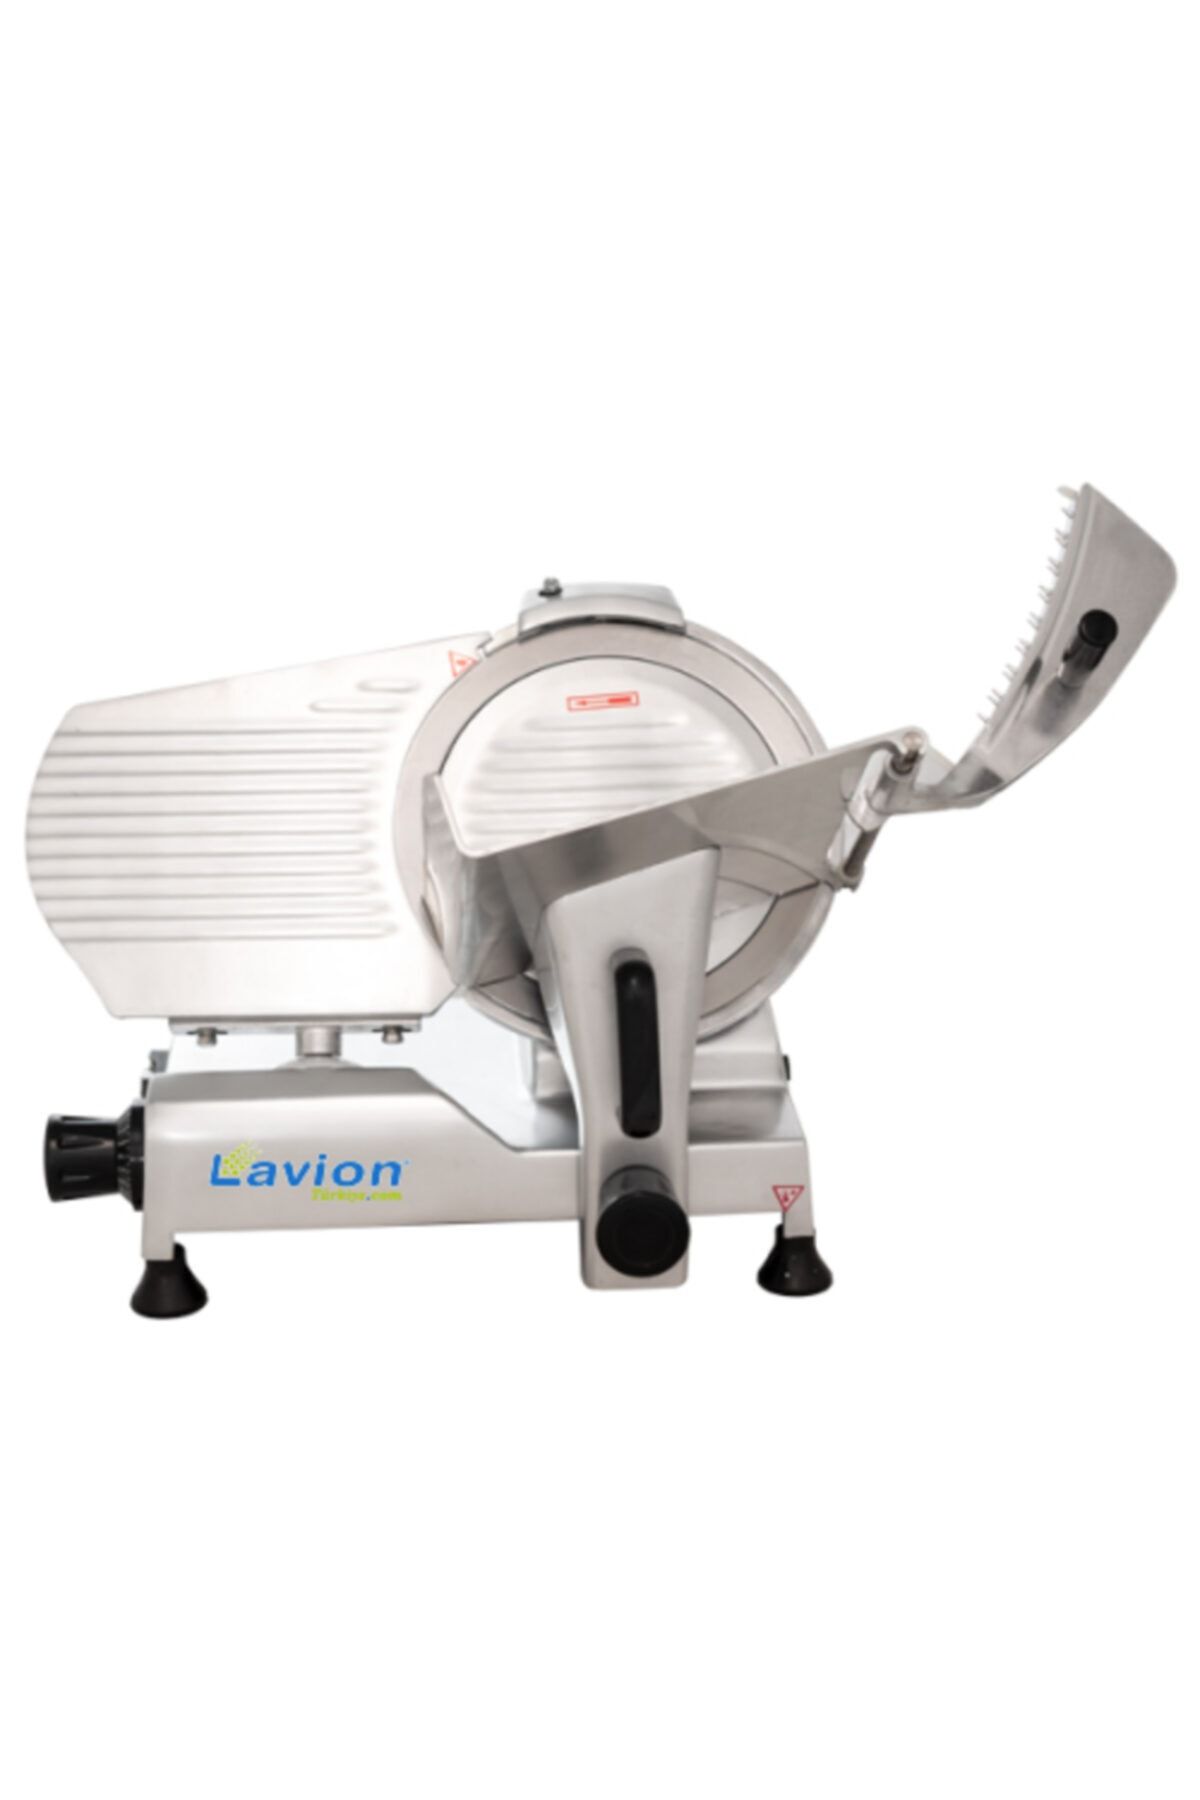 LavionDemsan Lavion Hbs 27 Cm Salam Kaşar Dilimleme Makinası - Dilimleme Makineleri 2 Yıl Garantili